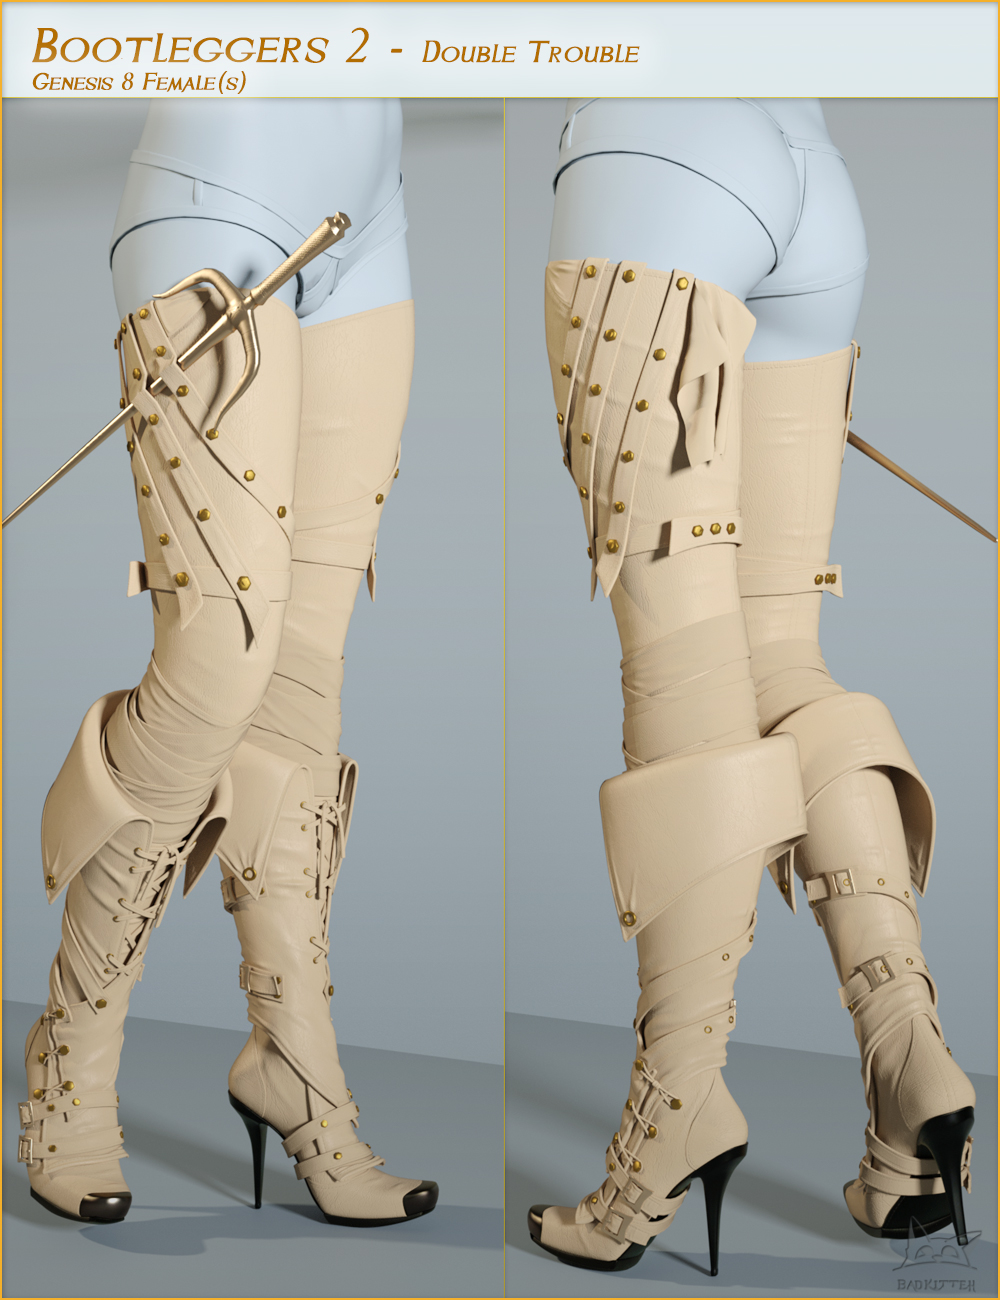 Bootleggers 2 - Double Trouble for Genesis 8 Female(s) by: BadKitteh Co, 3D Models by Daz 3D